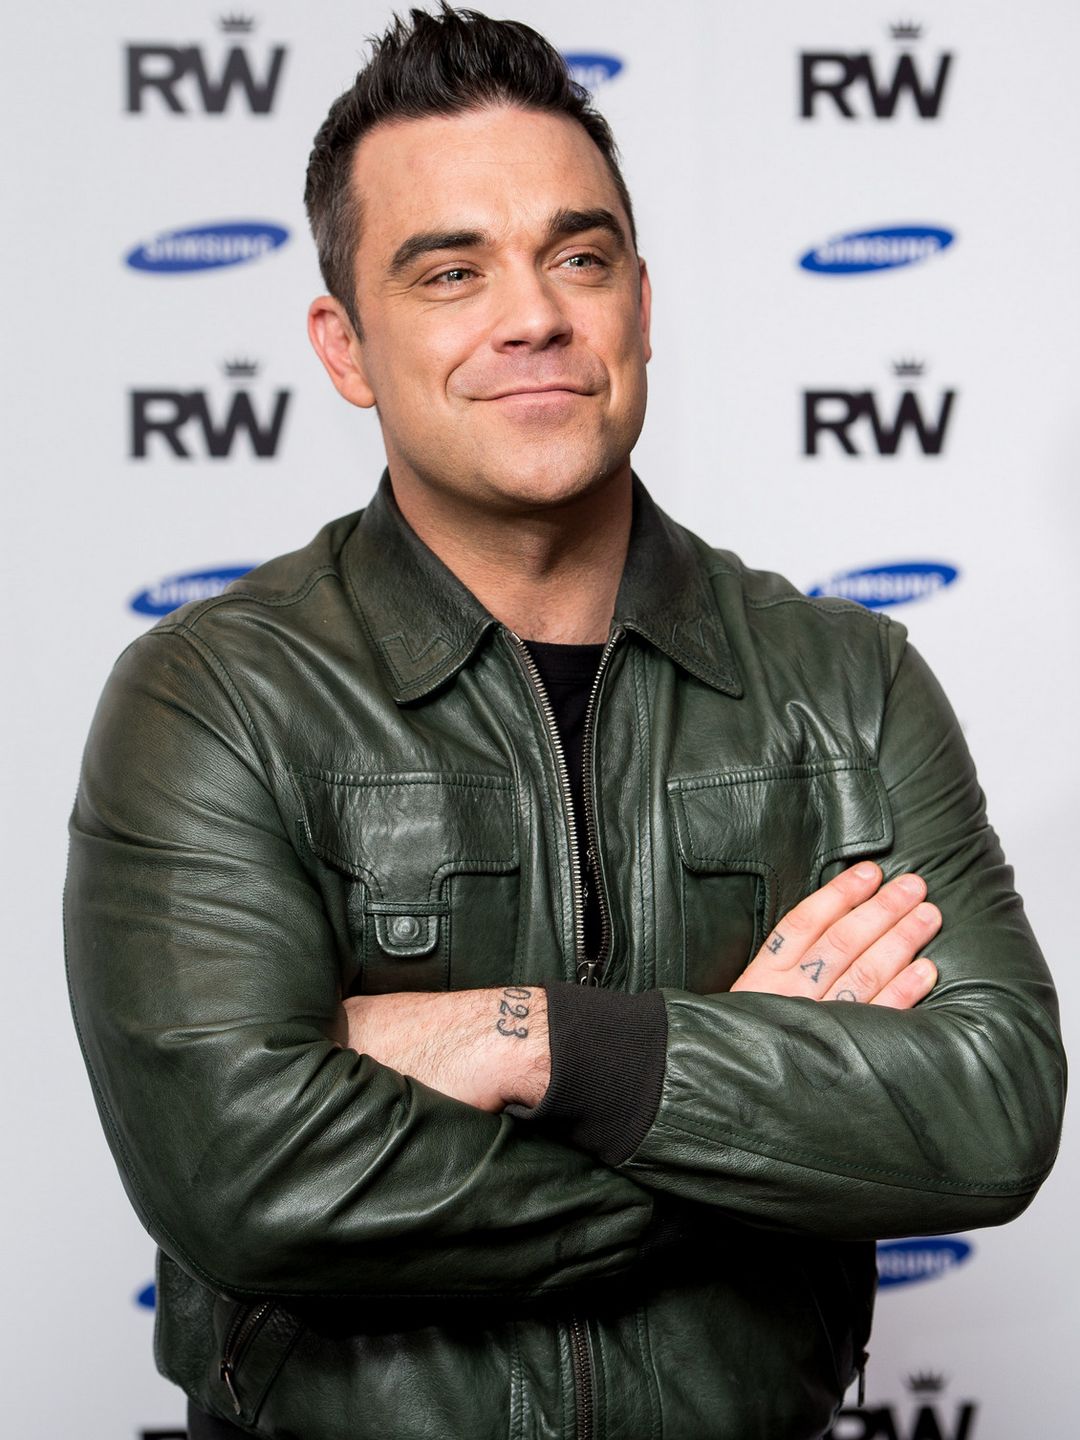 Robbie Williams parents